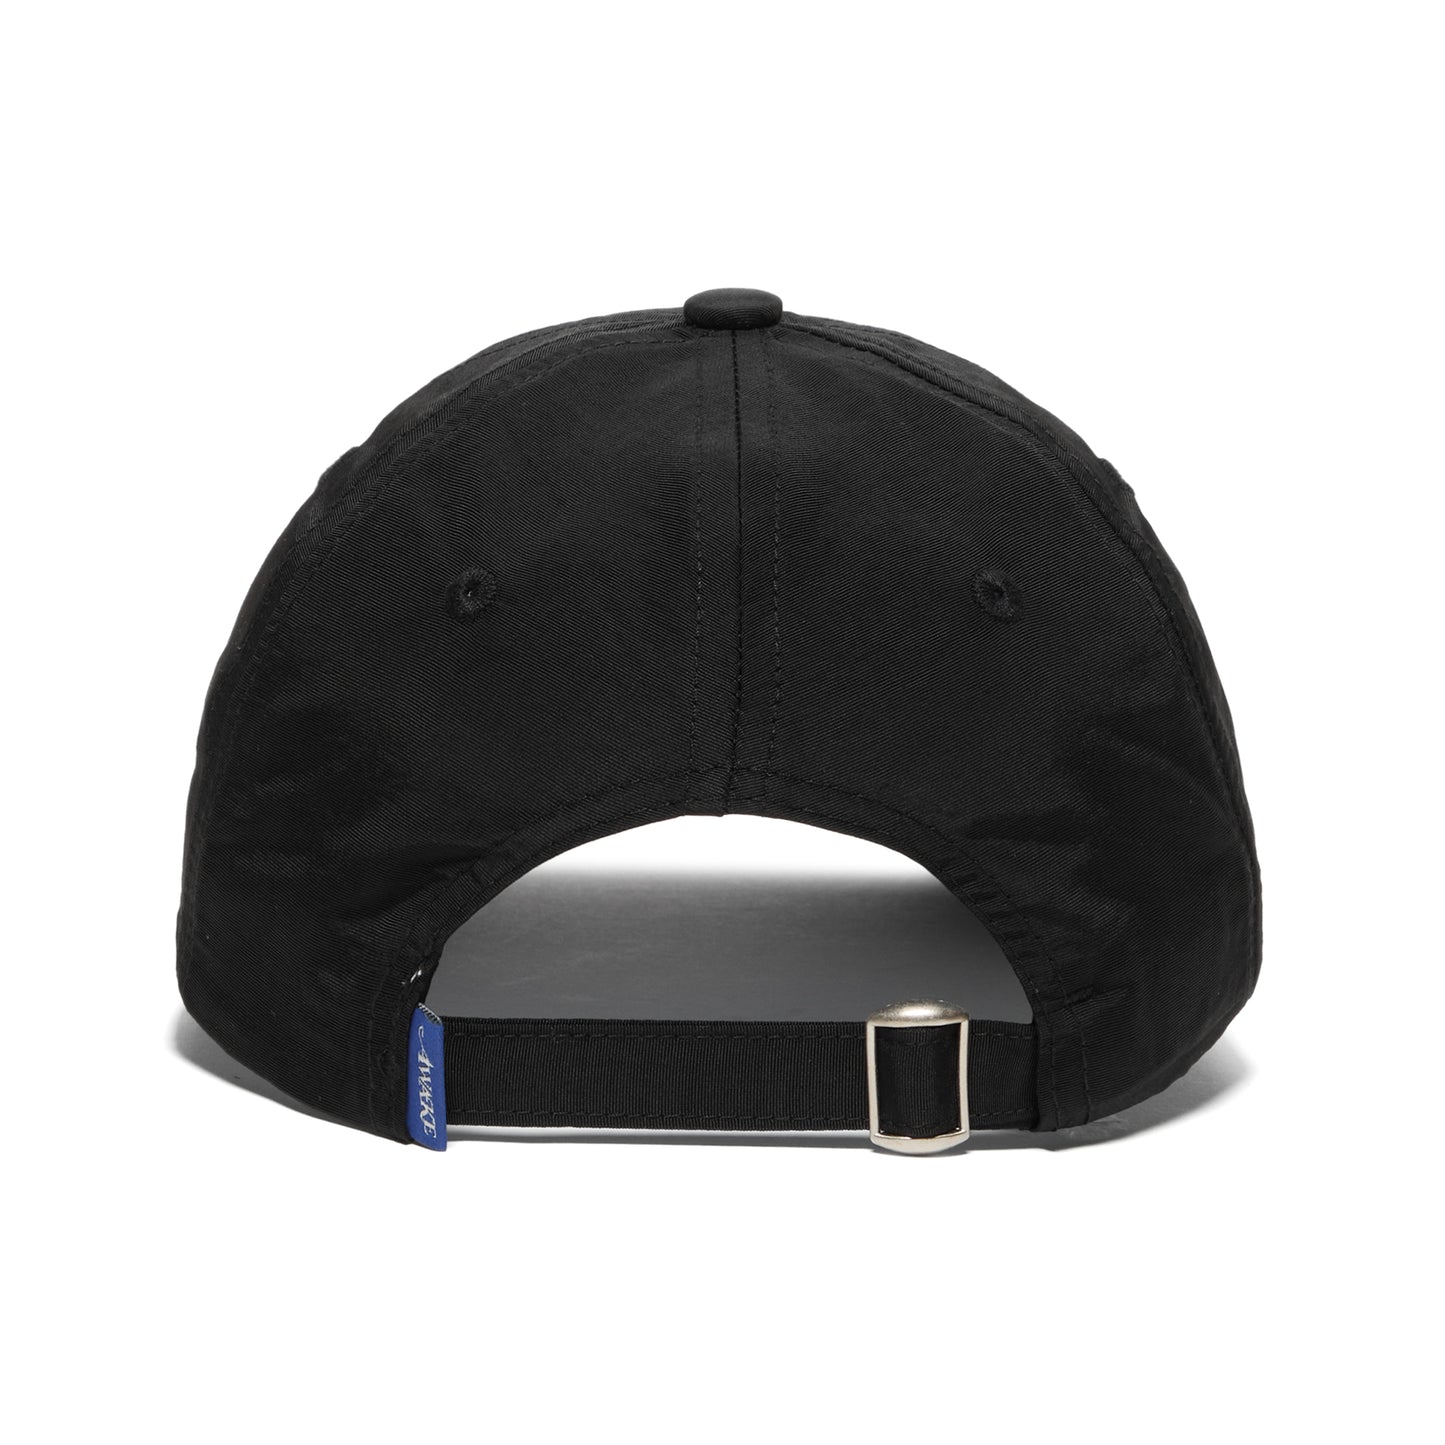 Awake NY Nylon Hat (Black)